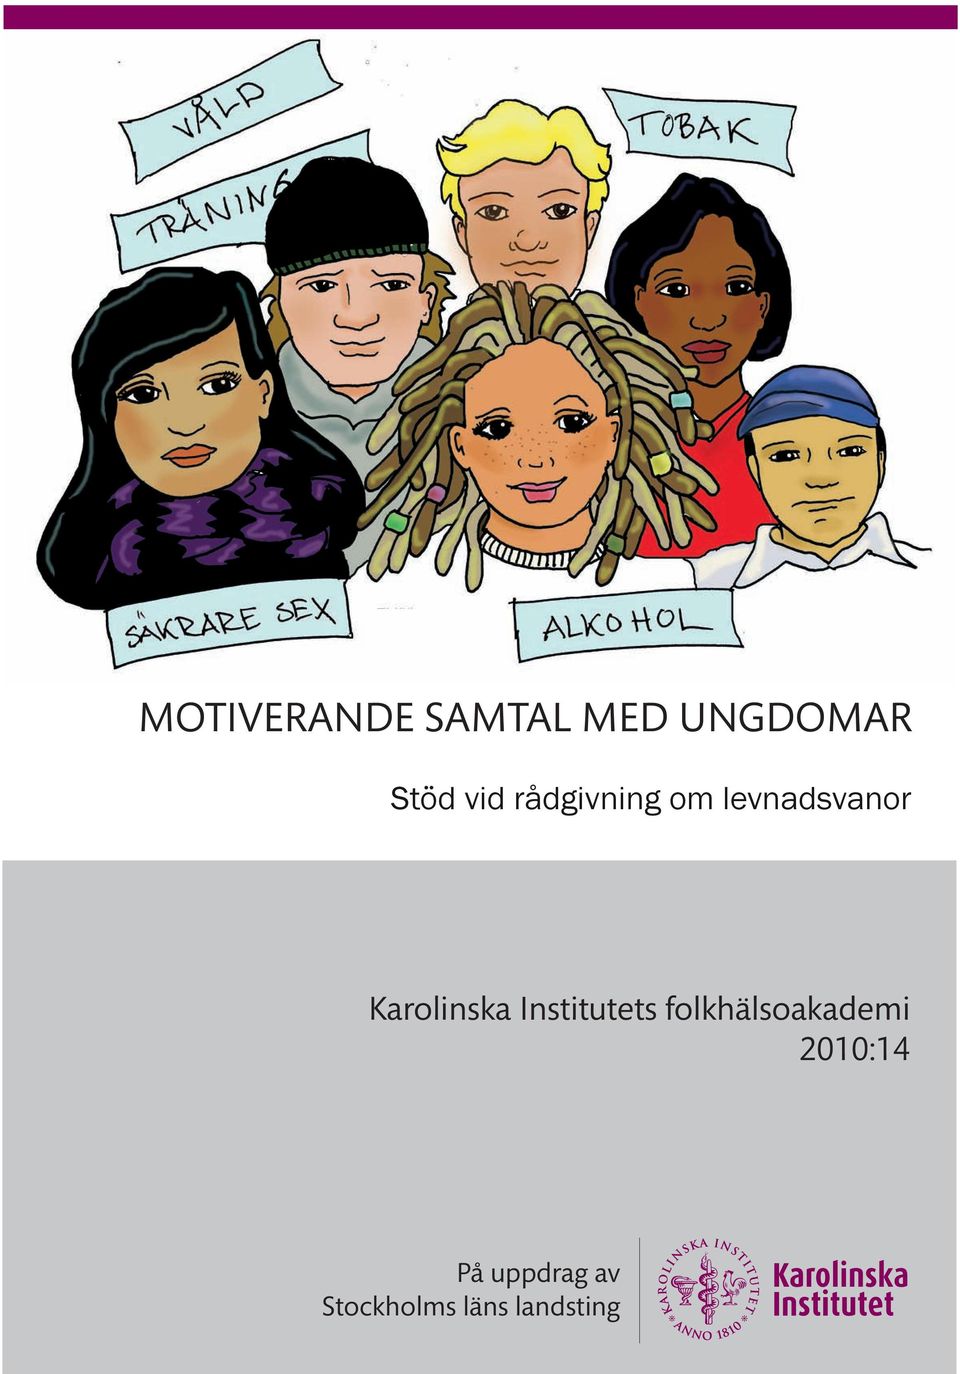 folkhälsoakademi 2010:14 På uppdrag av Stockholms